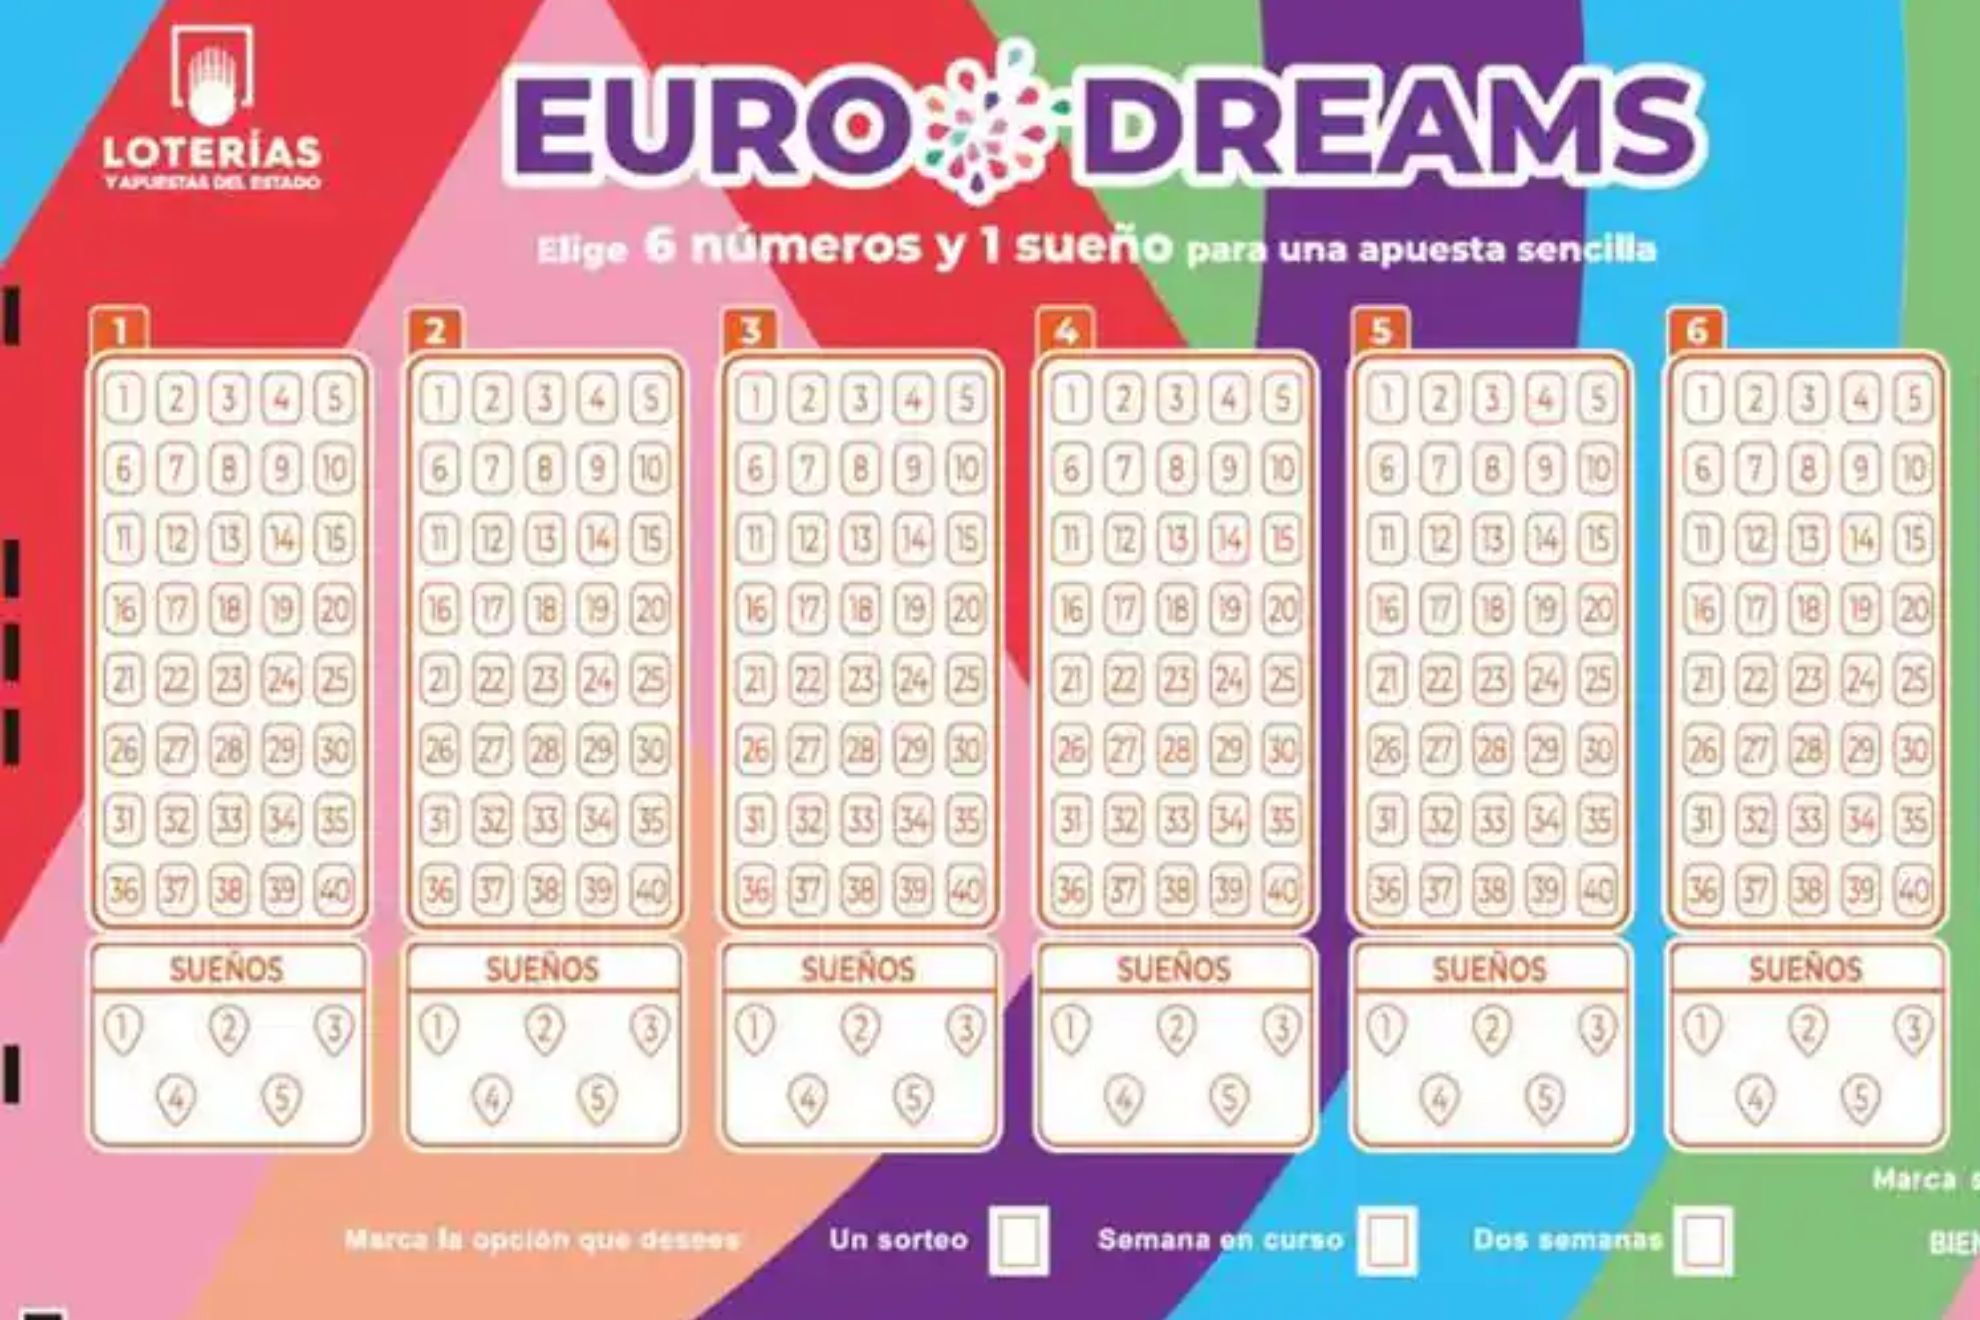 Cunto dinero se queda Hacienda con el premio gordo del EuroDreams, el nuevo juego de Lotera europea